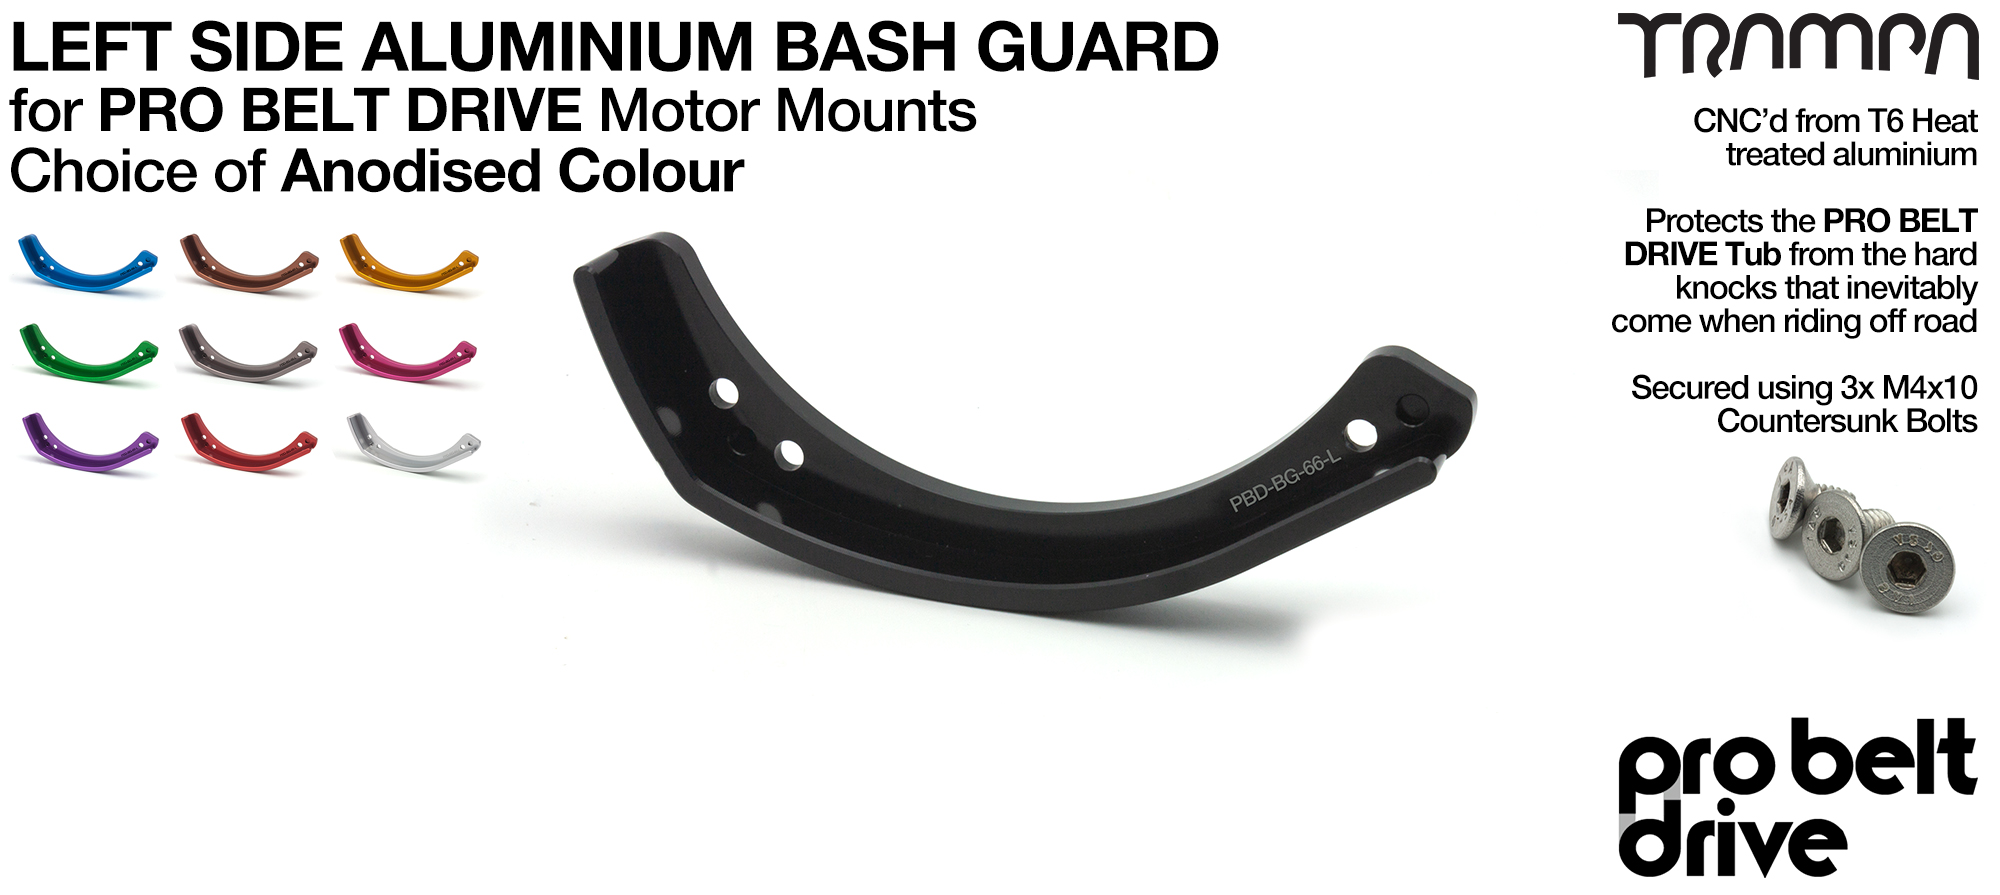 20mm PRO Belt Motor Mount Bash Guard - LEFT (REGULAR)